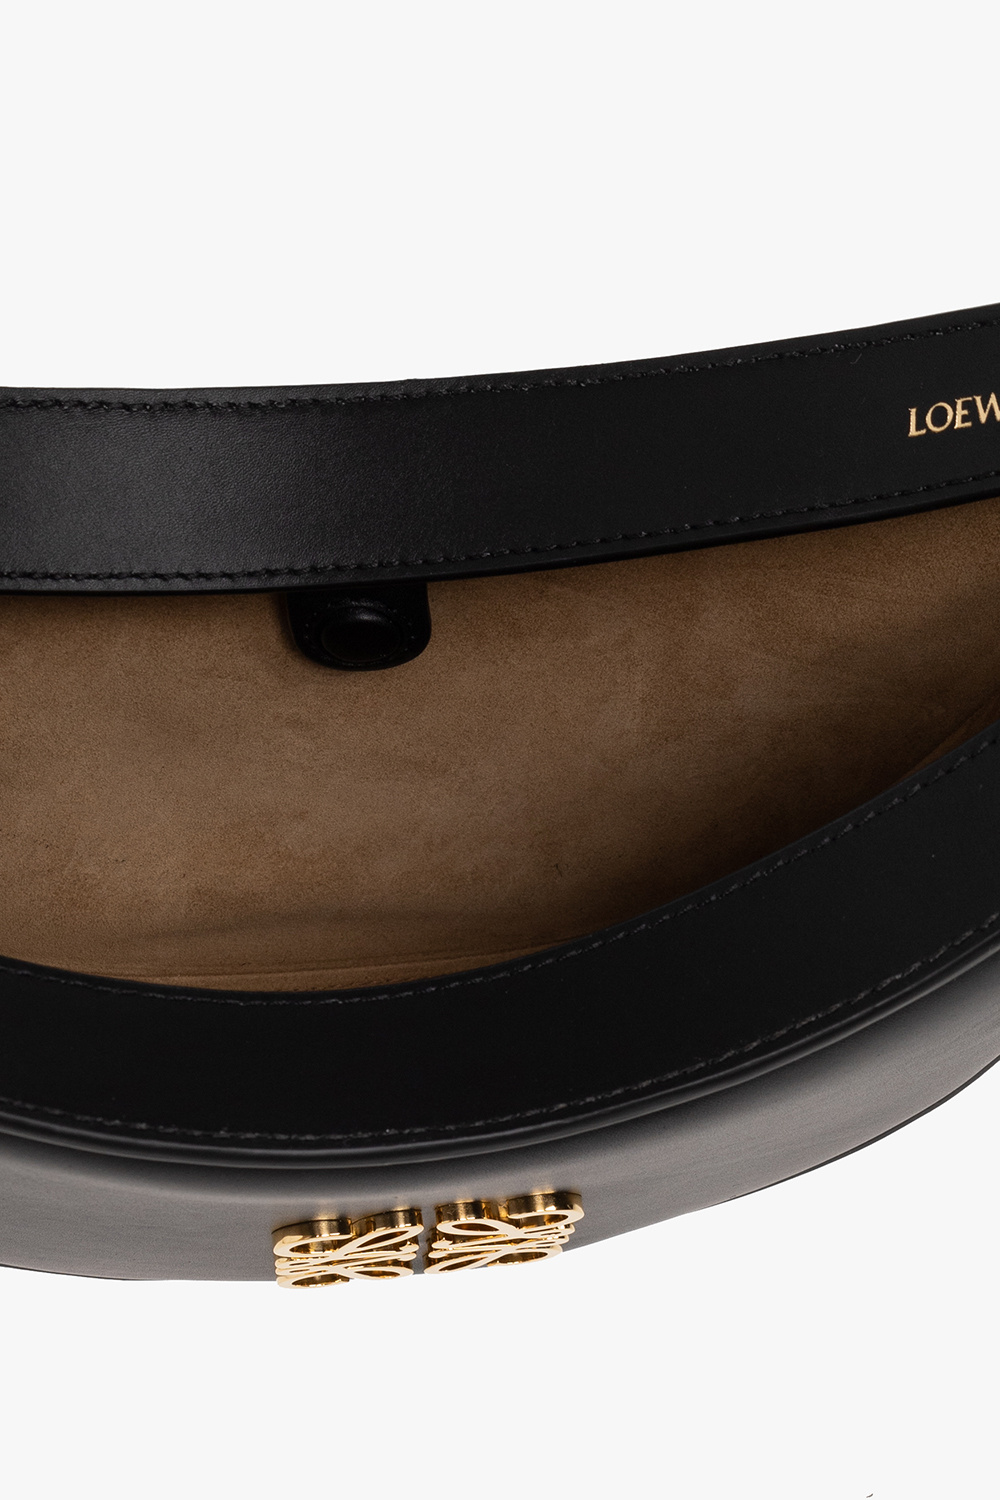 Loewe ‘Luna Small’ hobo bag